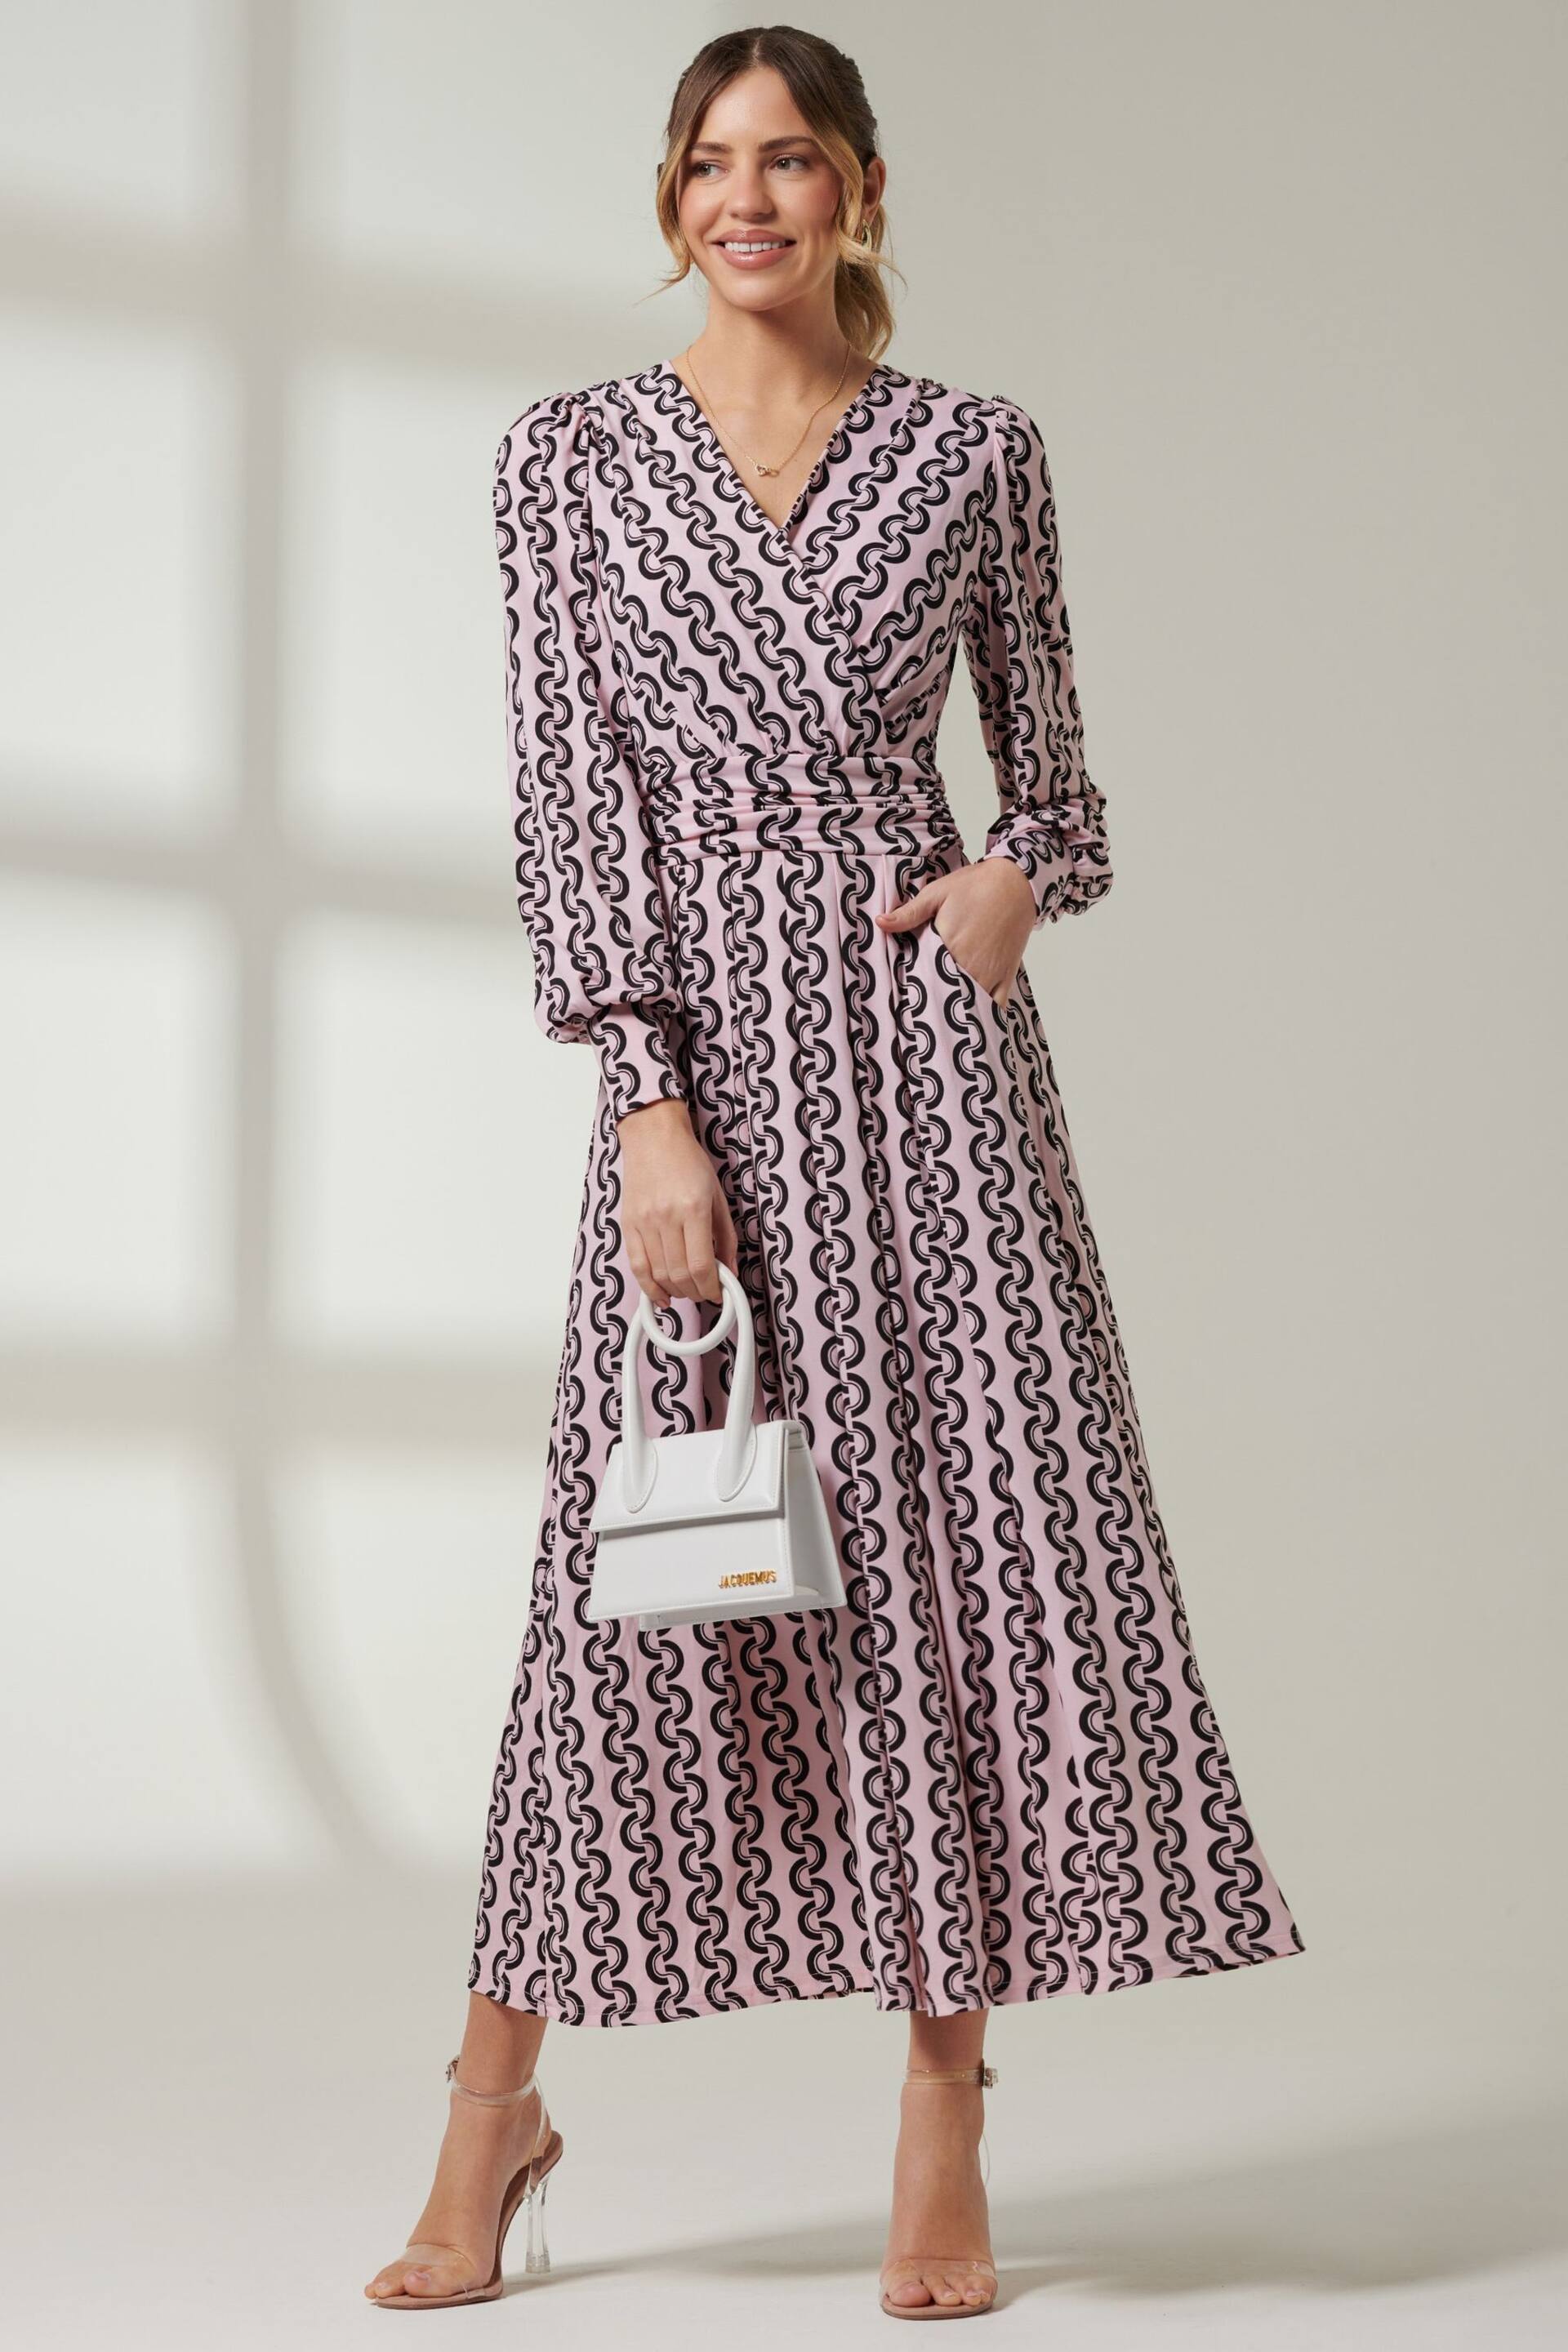 Jolie Moi Pink Renea Long Sleeve Maxi Dress - Image 5 of 7